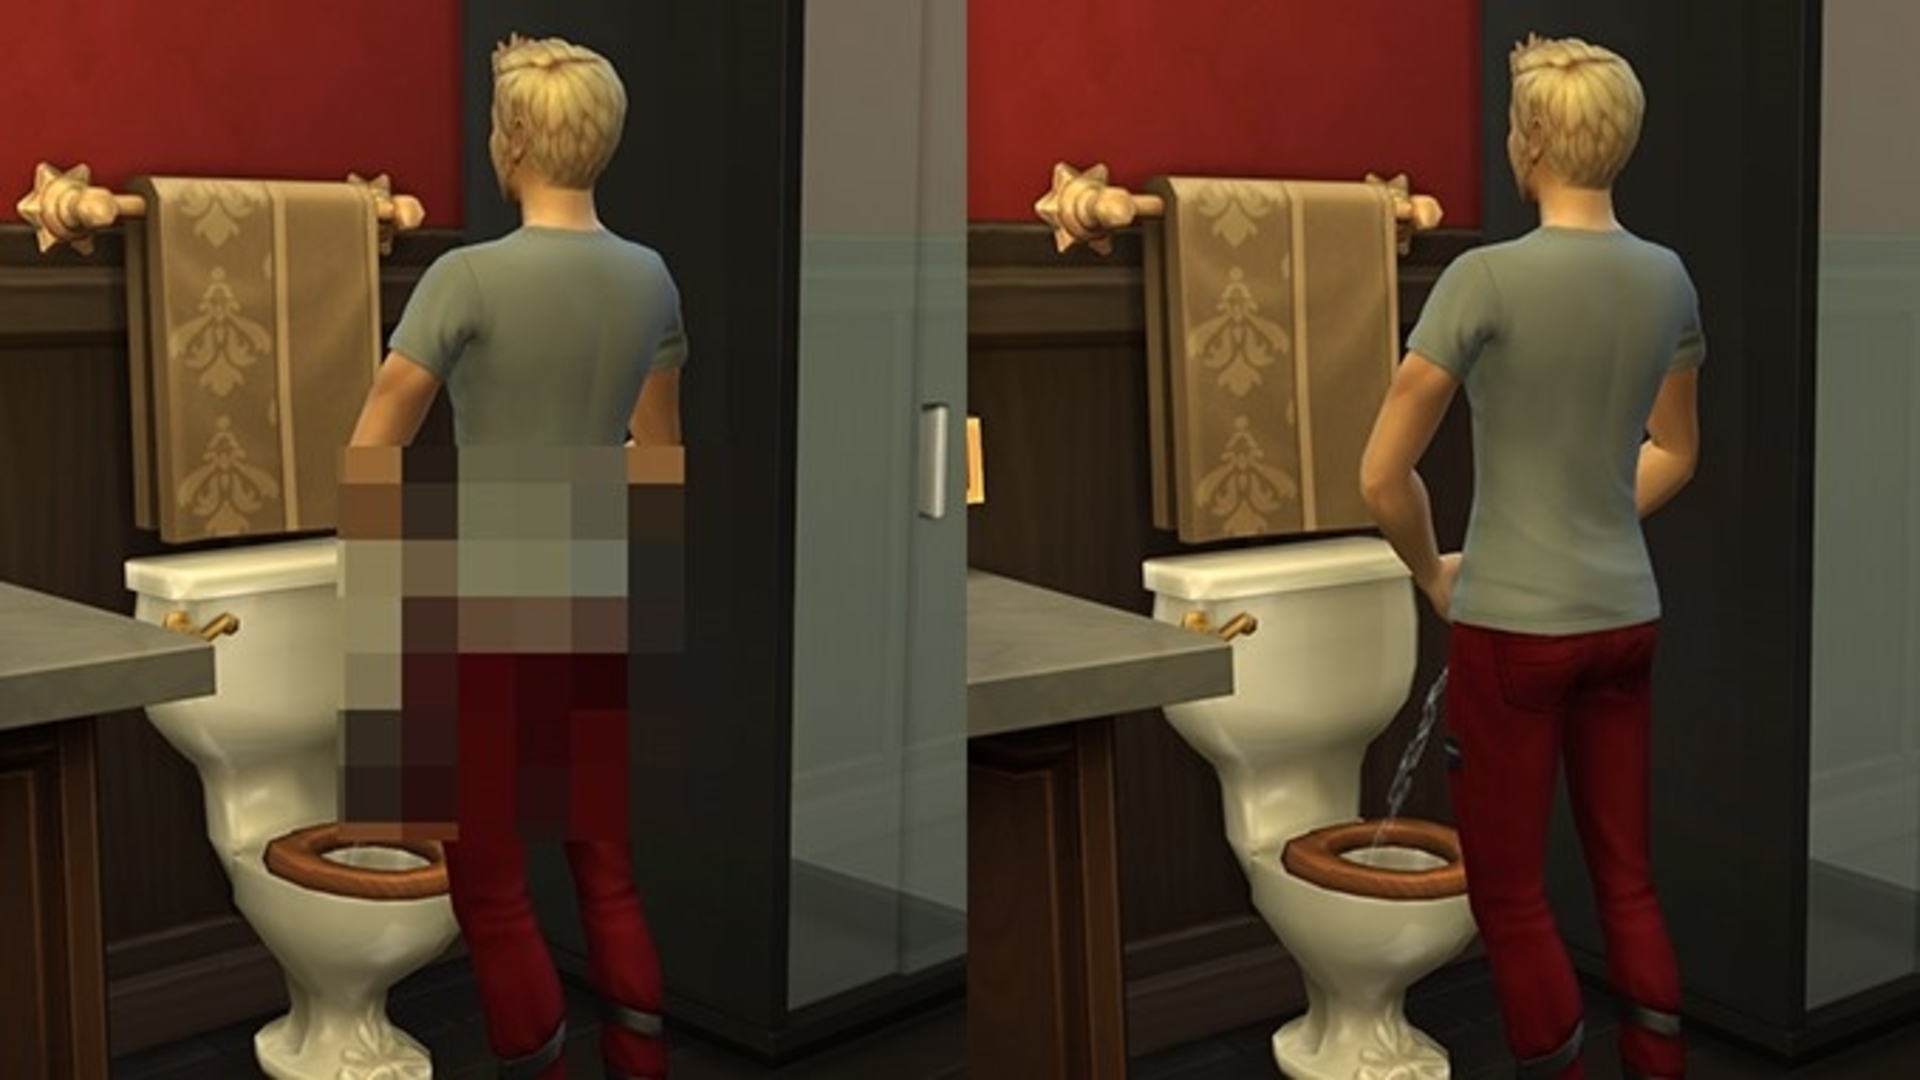 Una imagen dividida que muestra al mismo hombre orinando en el inodoro, incluida una sin censura, del mod sexual Sims 4 Crystal Clear, Sin censura